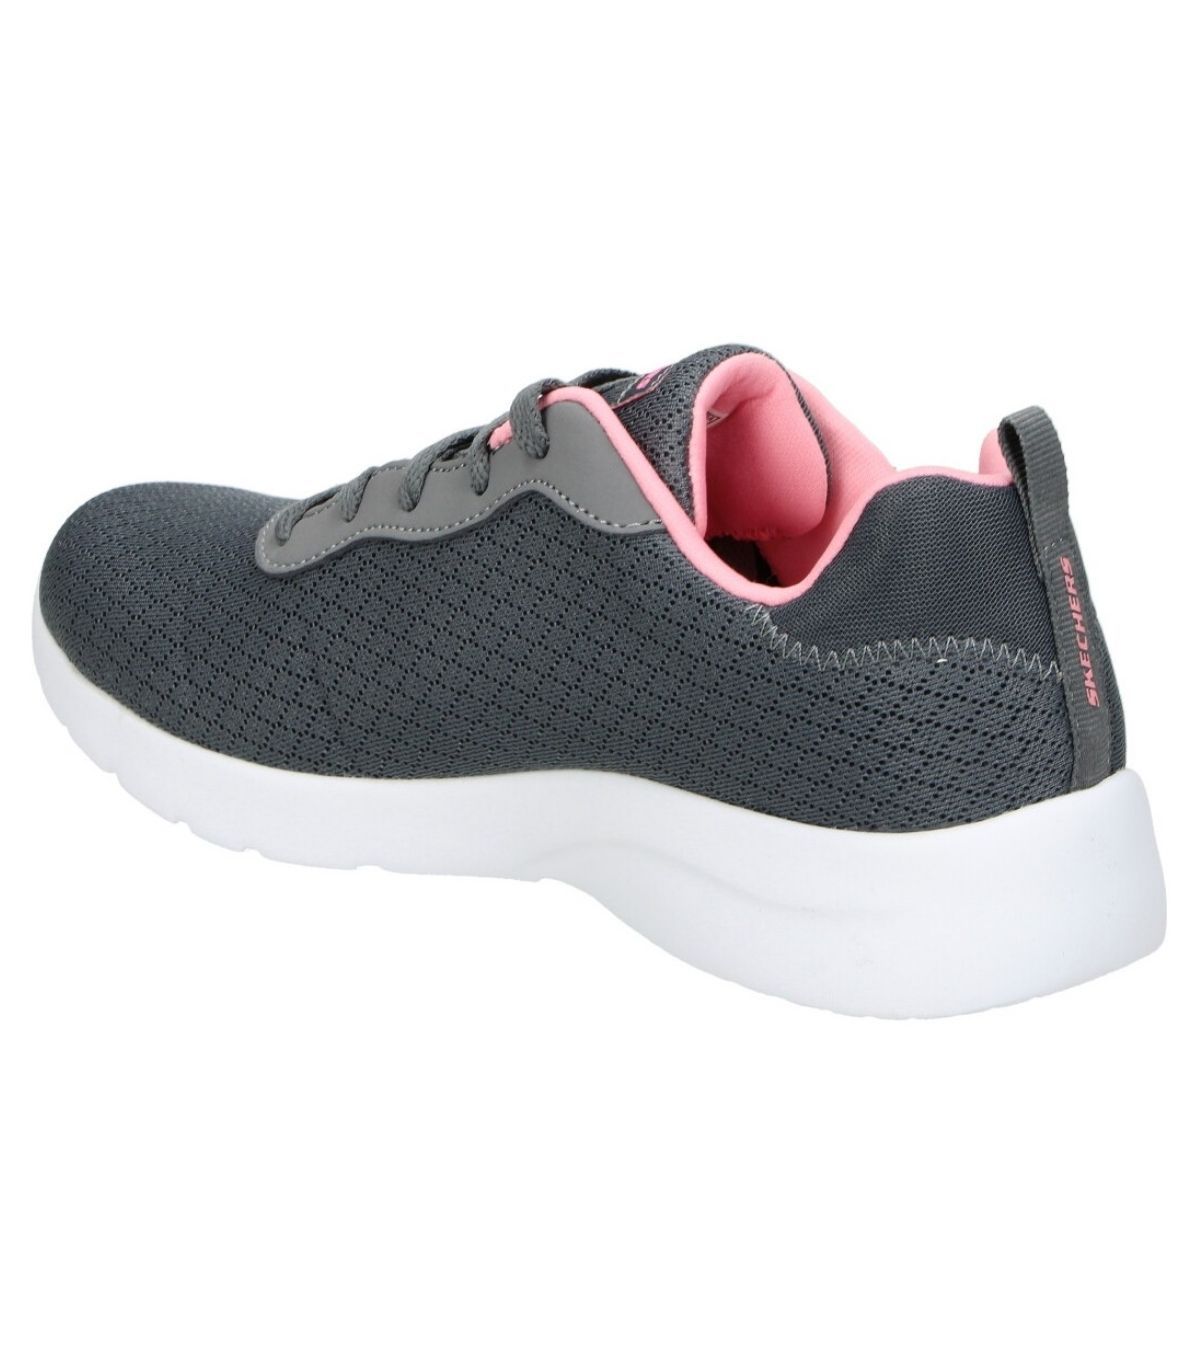 Zapatillas Skechers Dynamight 2.0 Charcoal Coral. Oferta y comprar.